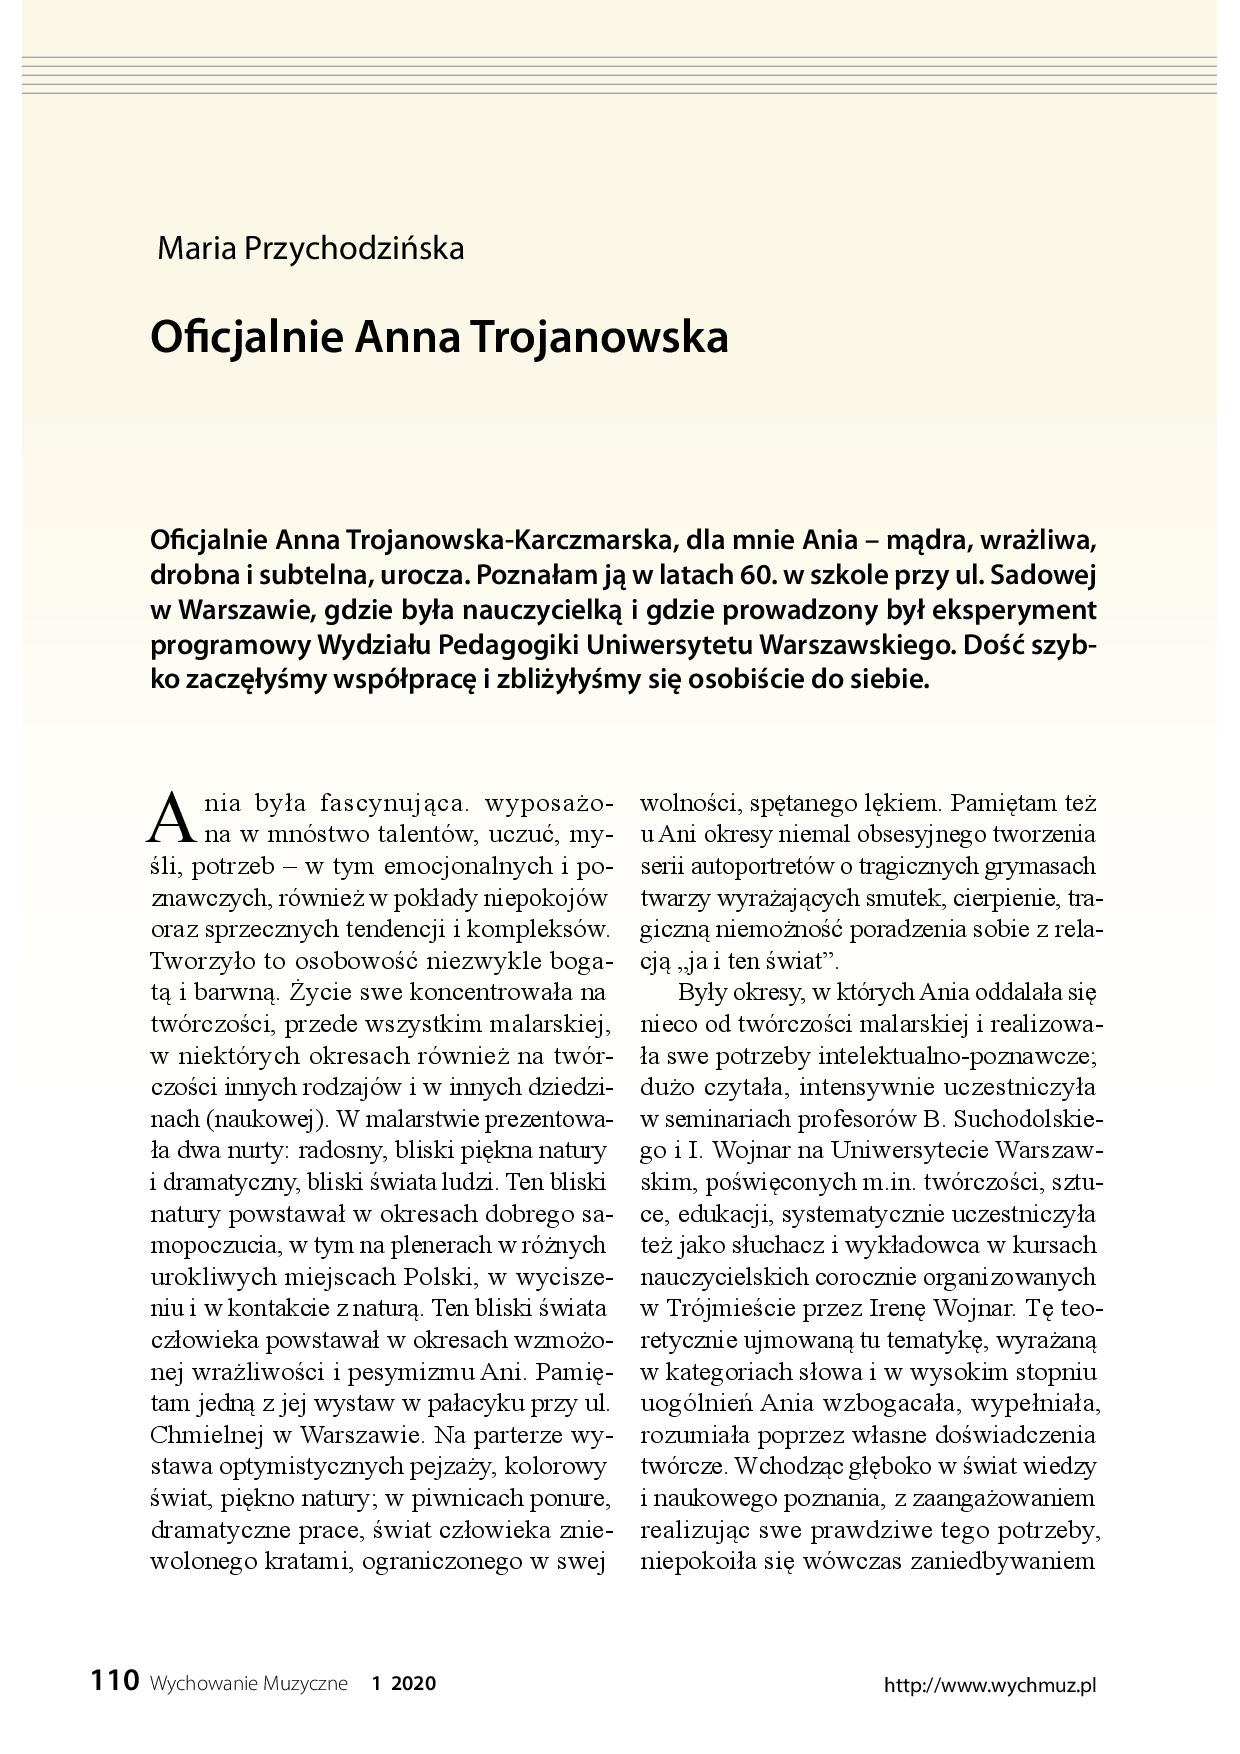 Oficjalnie Anna Trojanowska